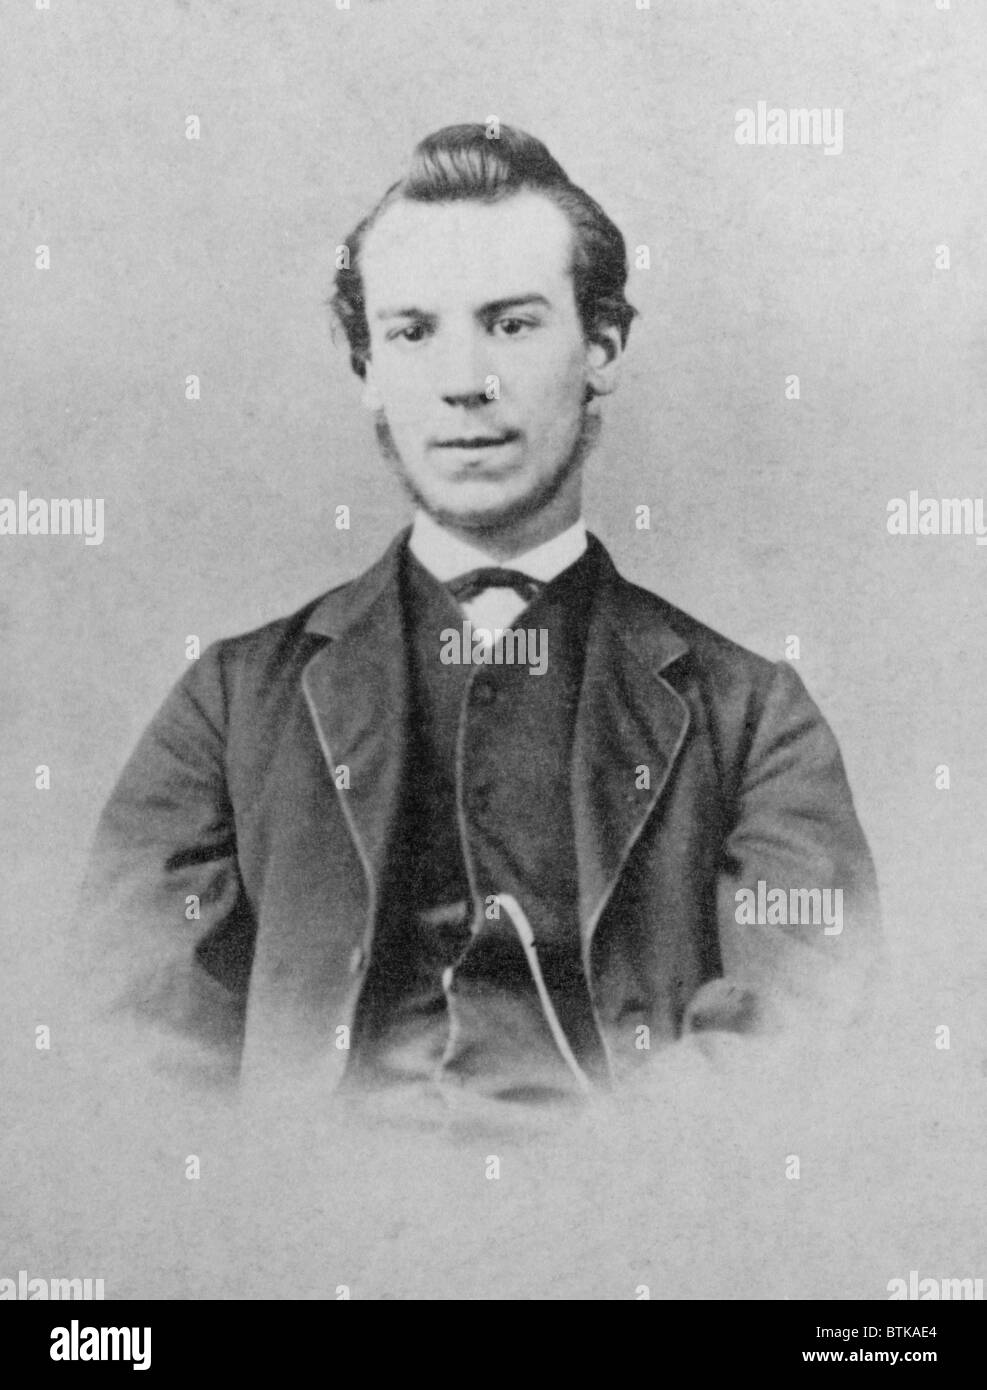 Alexander Graham Bell (1847-1922) à l'âge de 18 ans à Elgin, en Ecosse avant son immigration au Canada en 1870. Banque D'Images